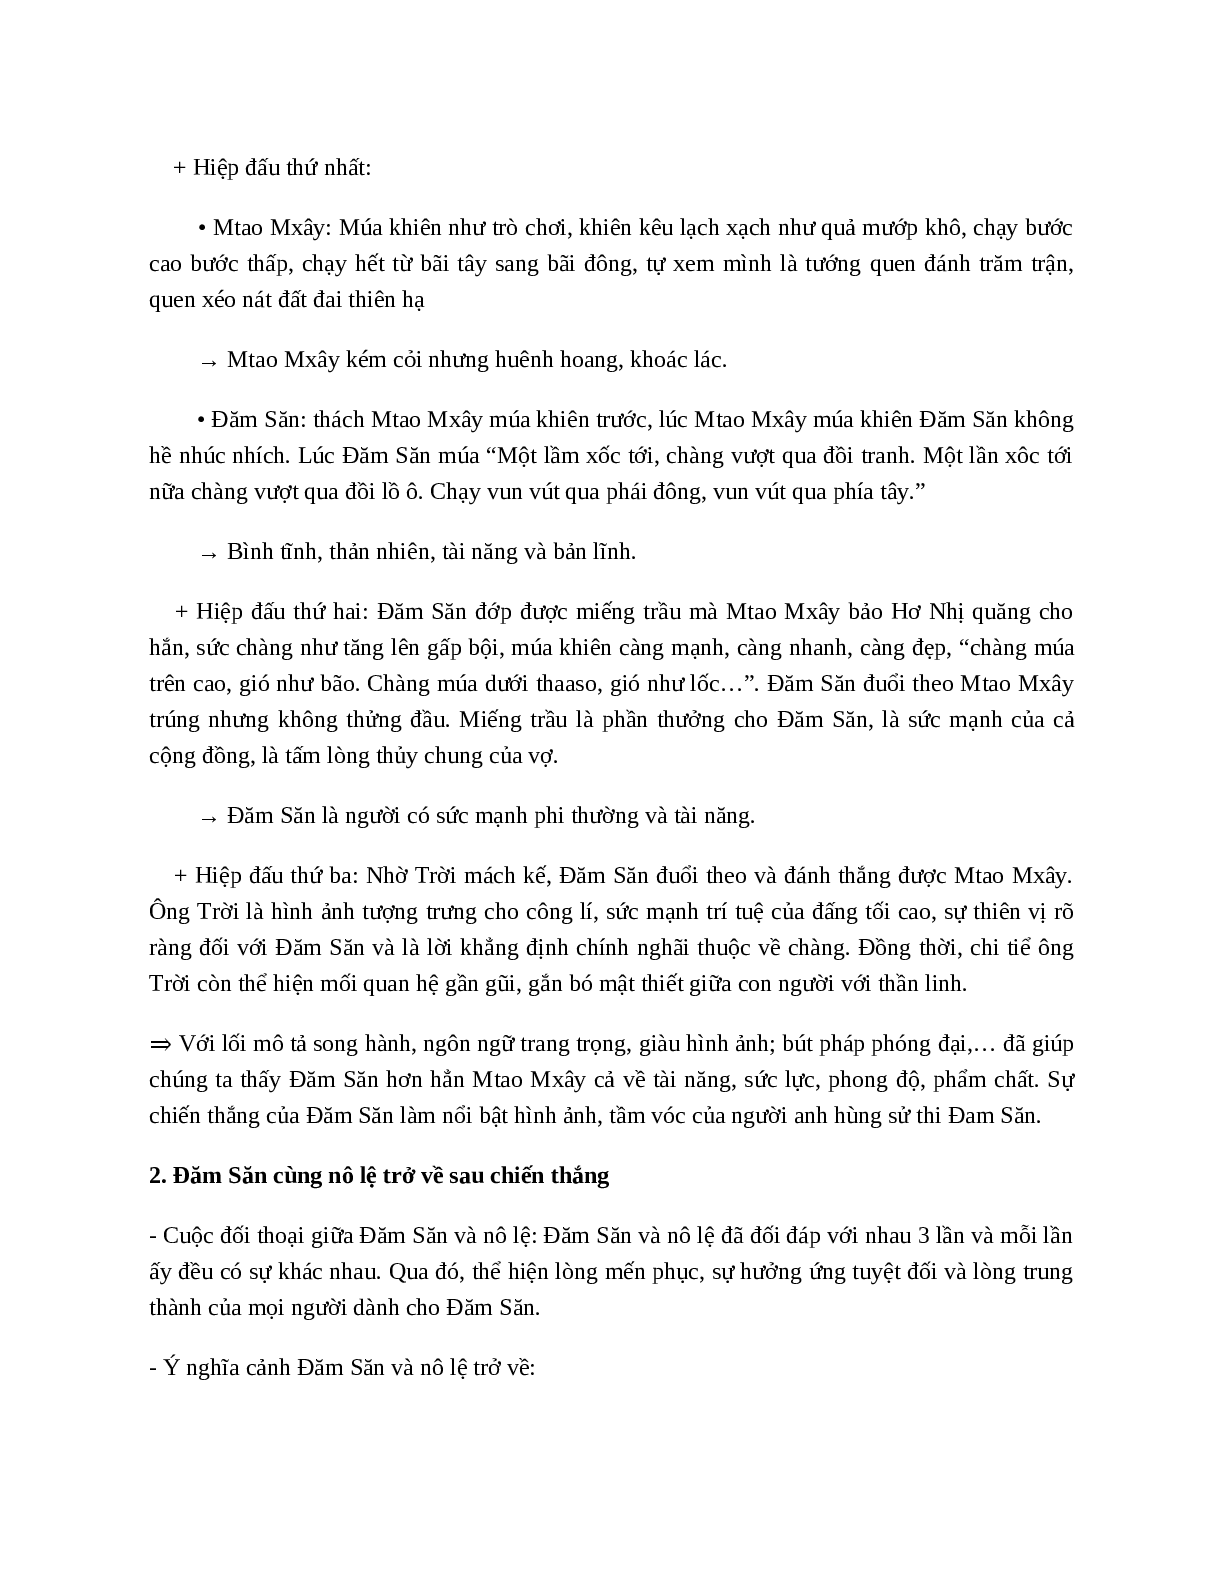 Chiến thắng Mtao Mxây – nội dung, dàn ý phân tích, bố cục, tóm tắt (trang 3)